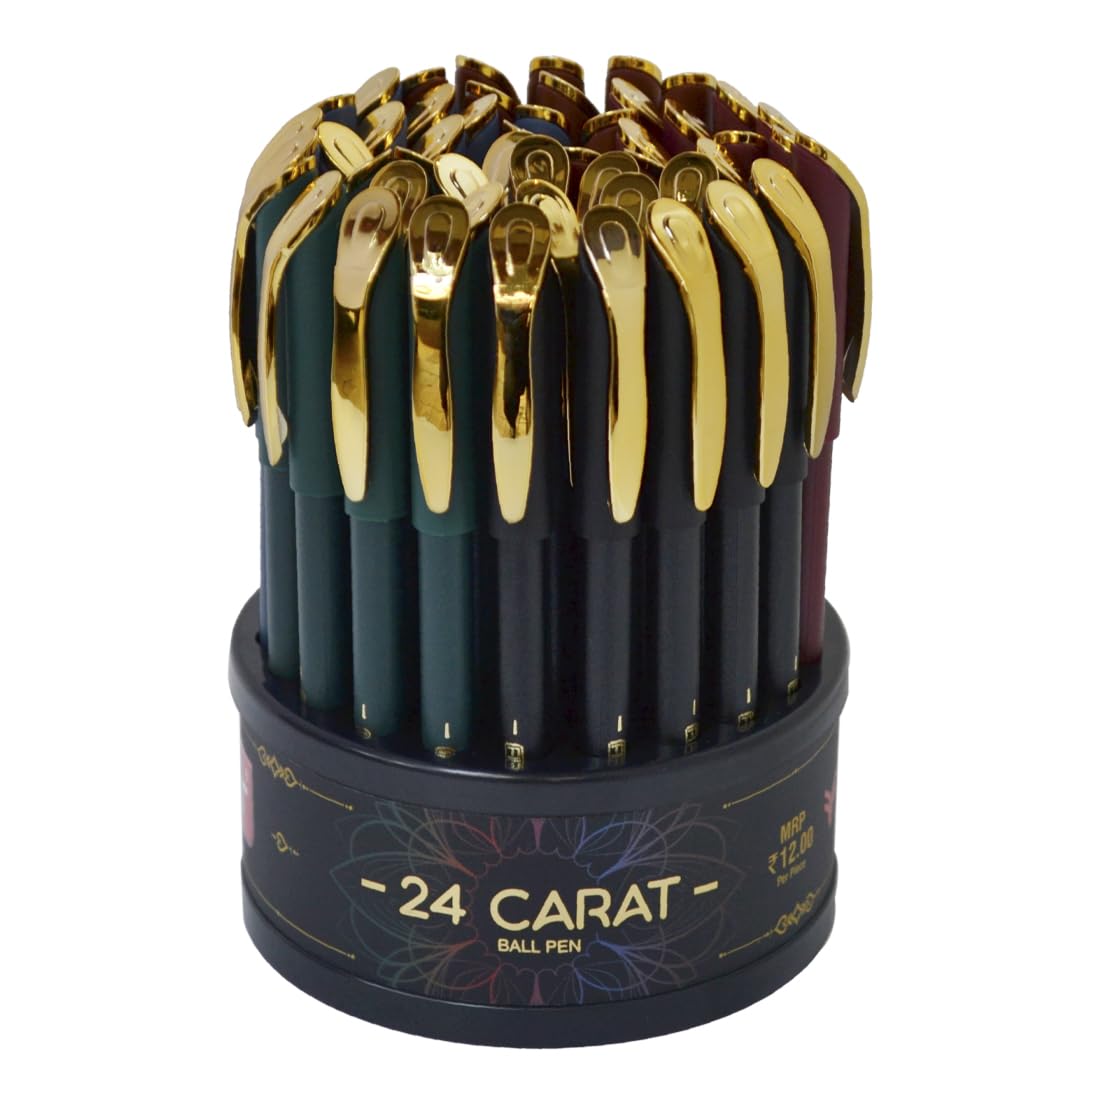 Flair 24 Carat Ball Pen Wallet Pack